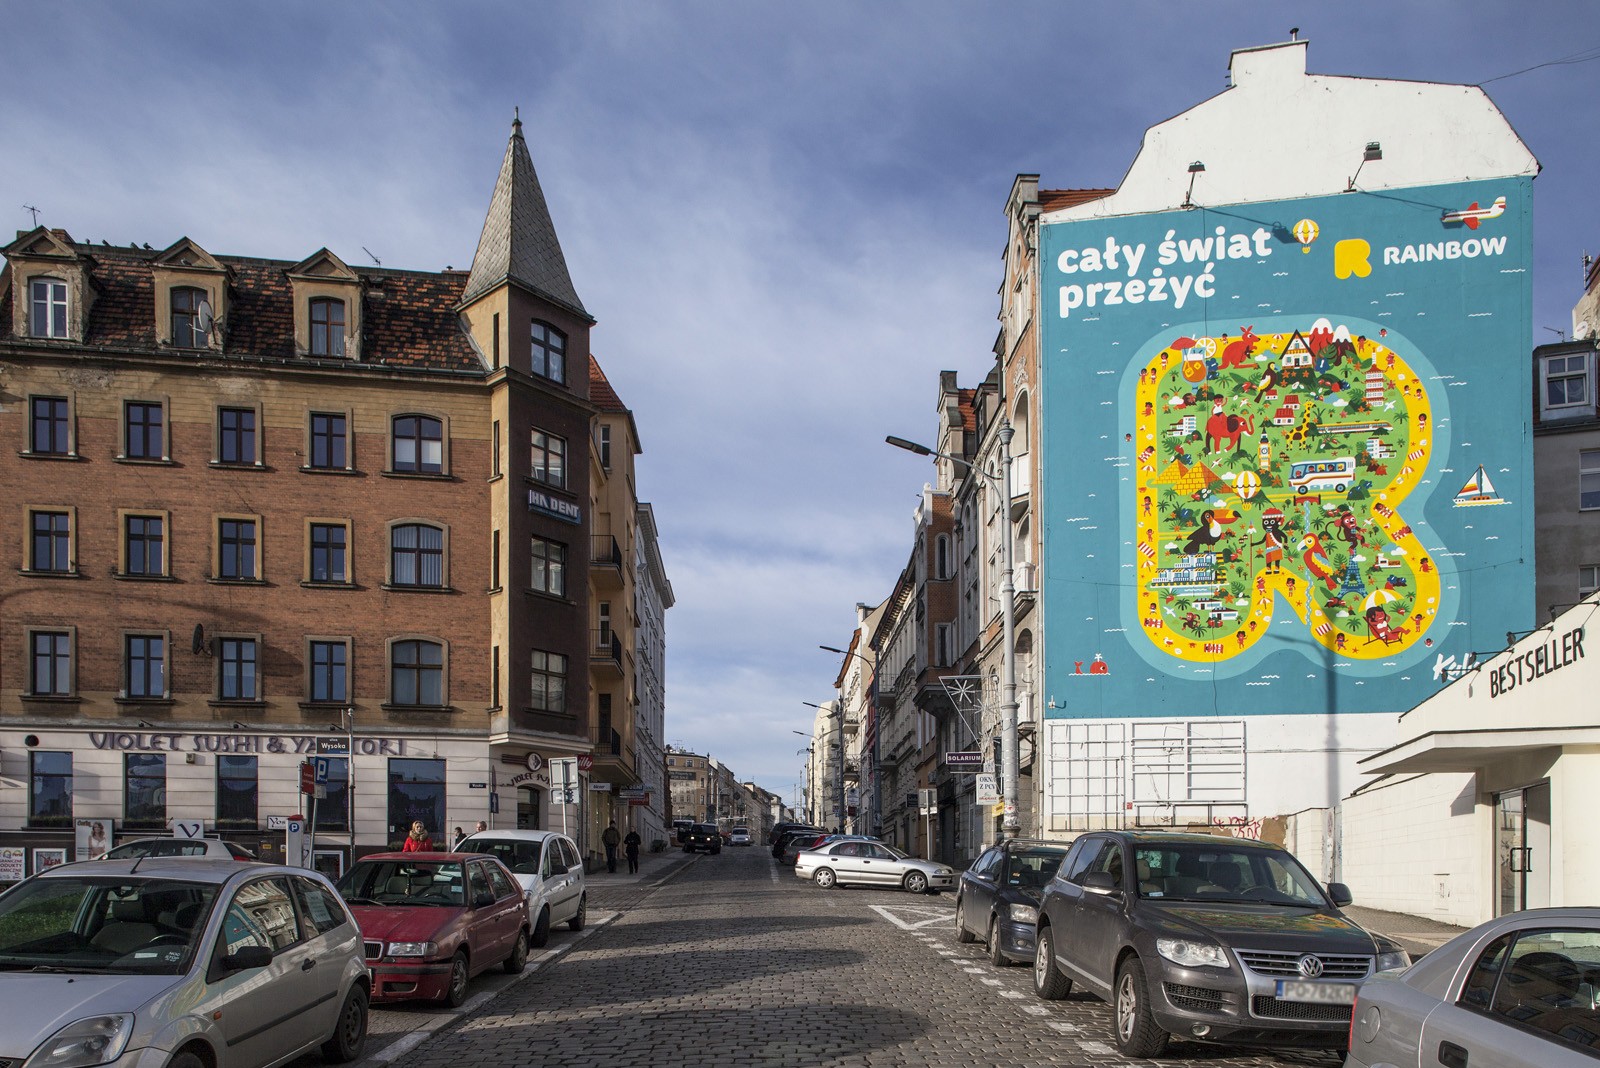 Mural reklamowy Rainbow w Poznaniu | The whole world experience | Portfolio